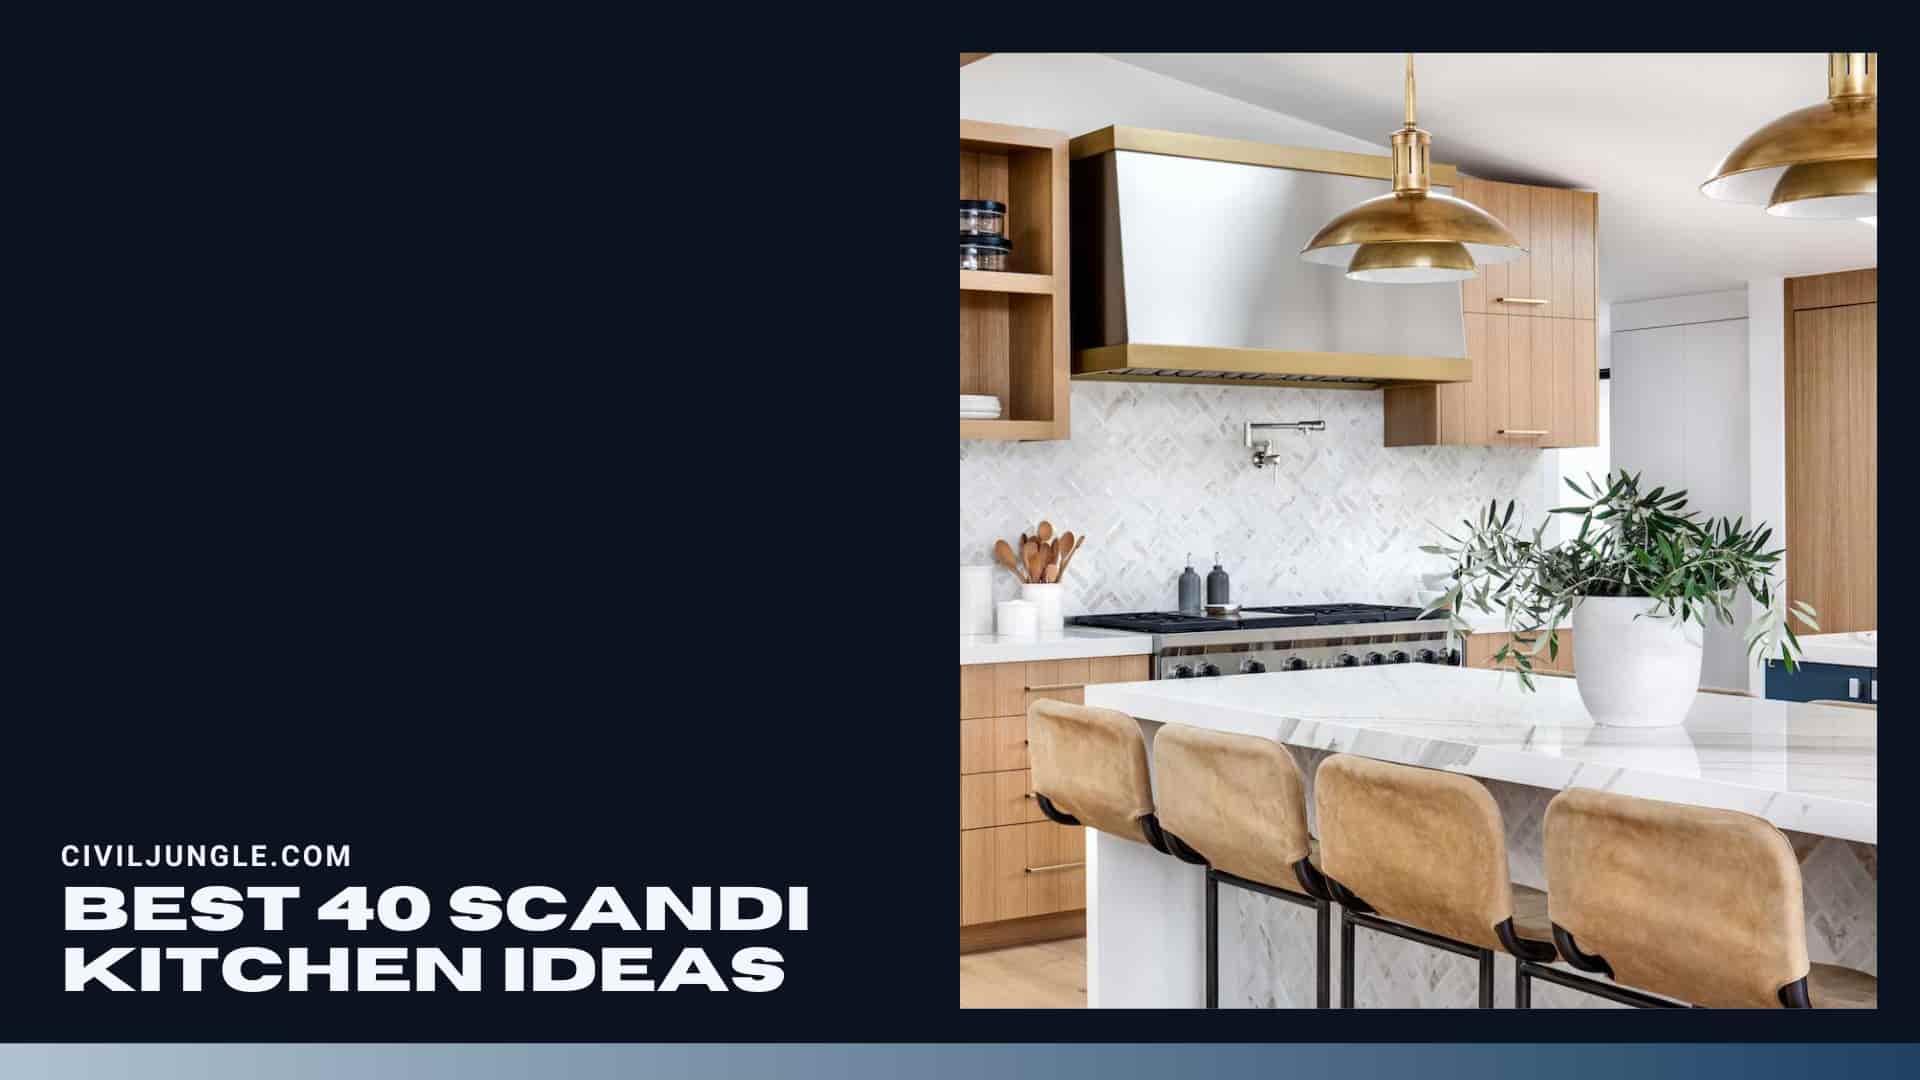 Best 40 Scandi Kitchen Ideas